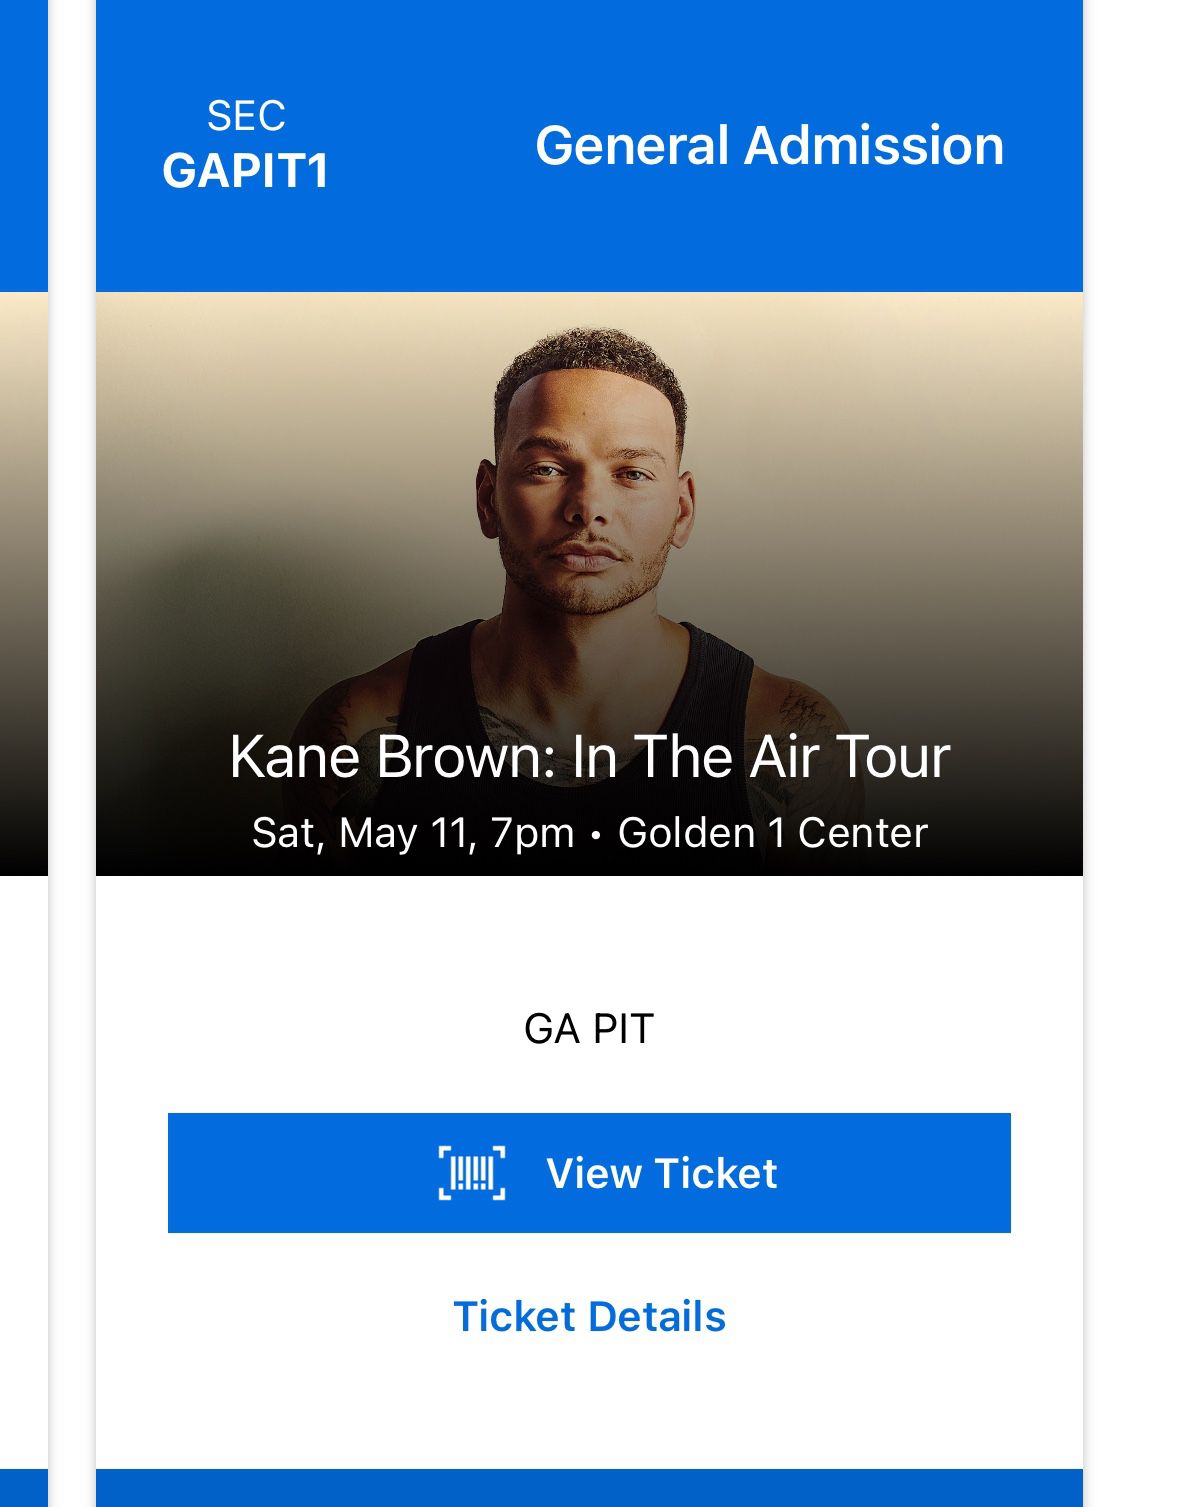 Kane Brown Tickets 